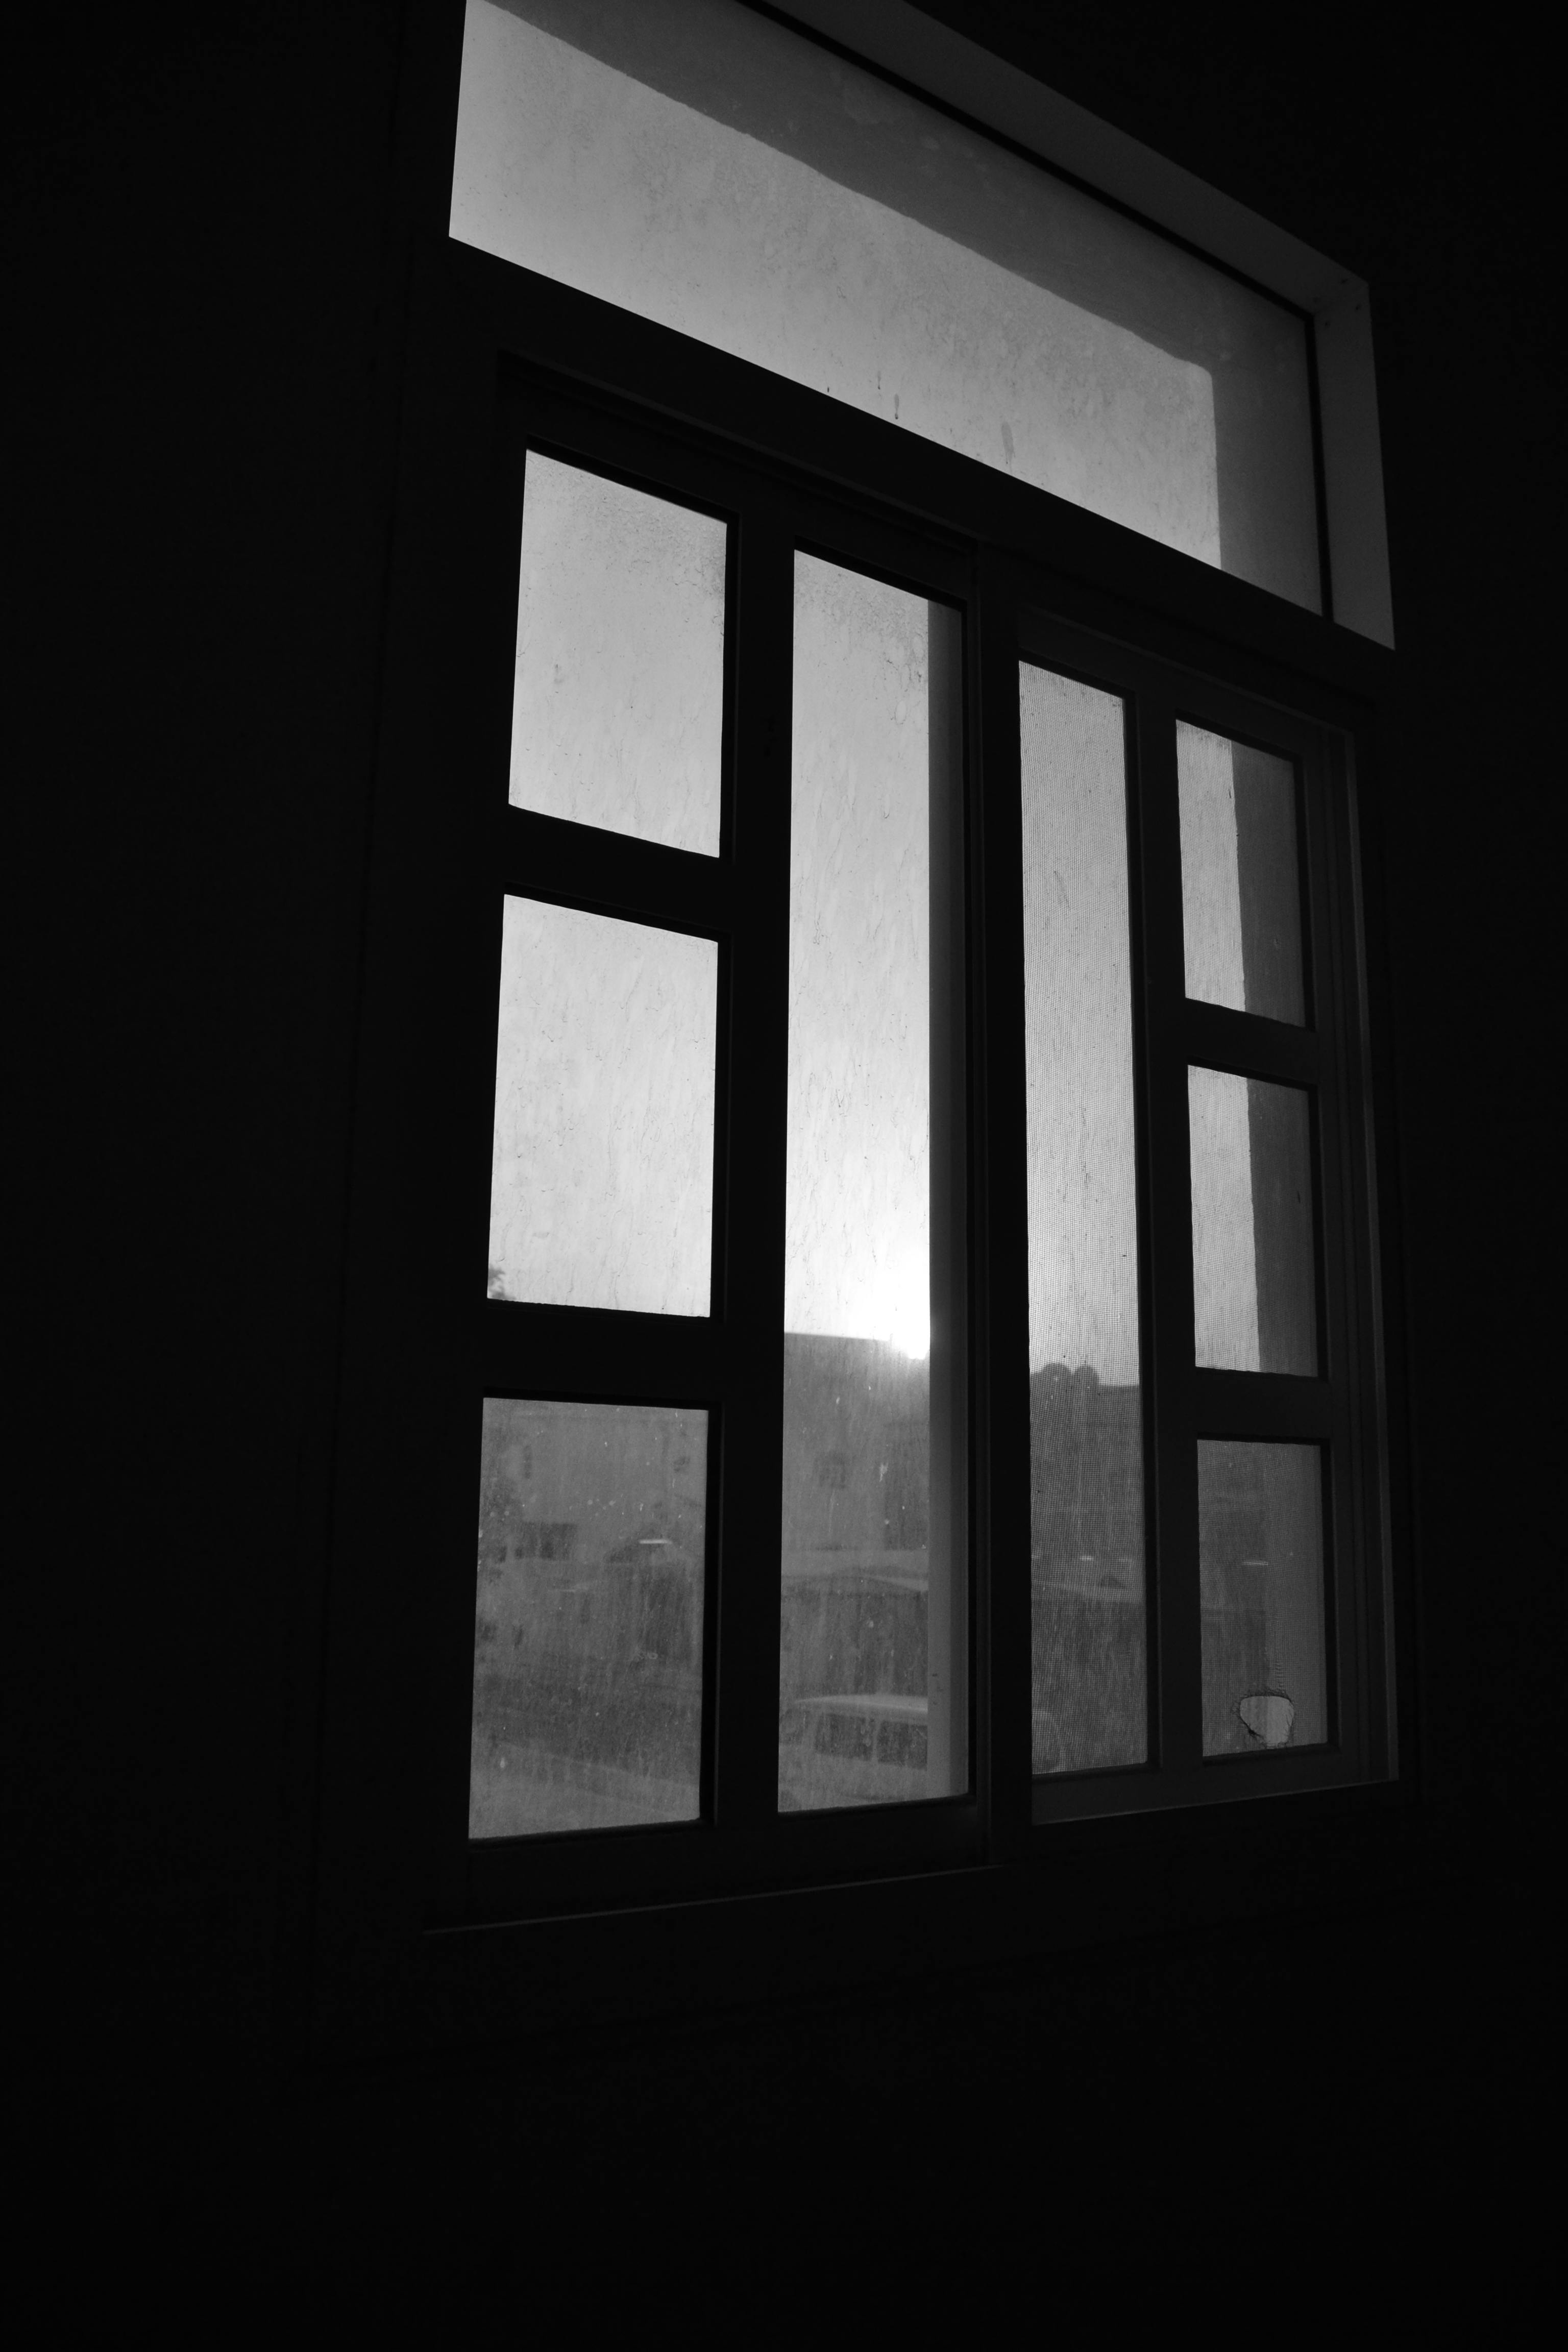 Free stock photo of black and white, dark, window